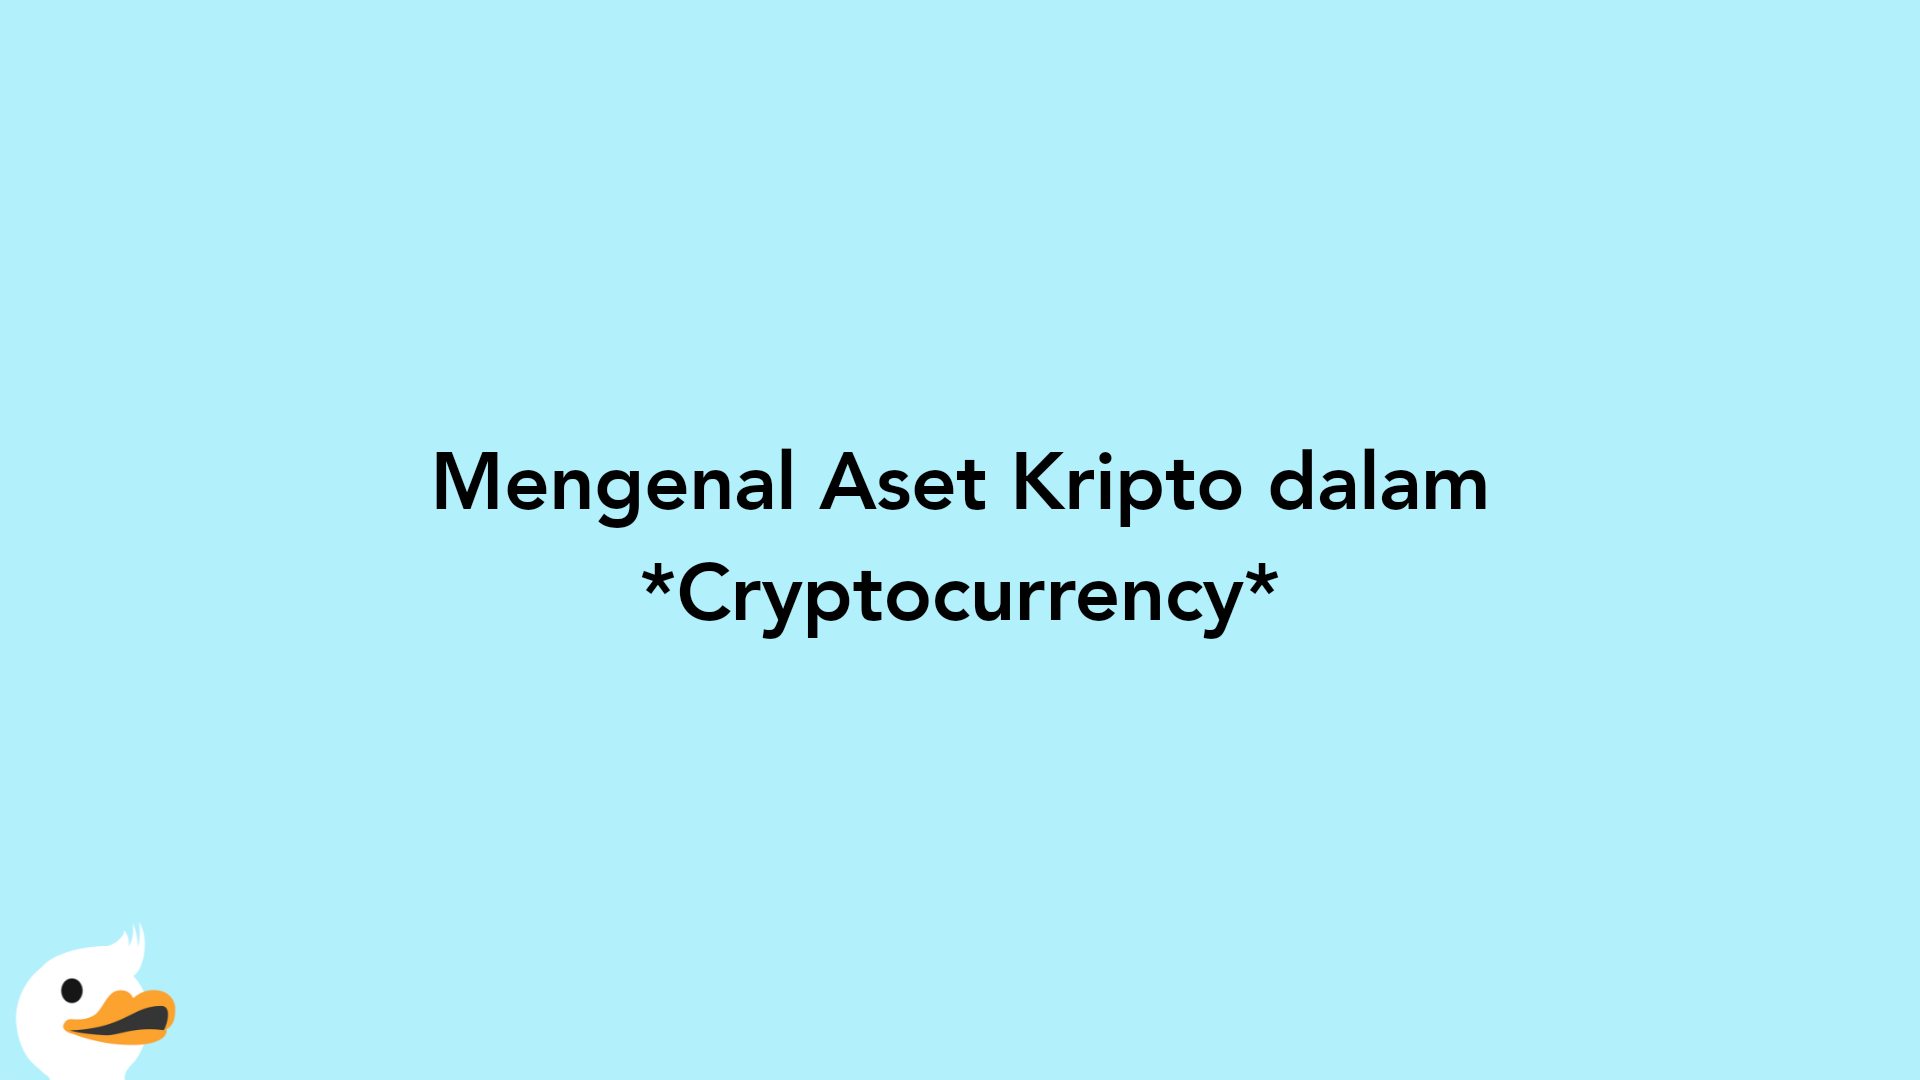 Mengenal Aset Kripto dalam Cryptocurrency